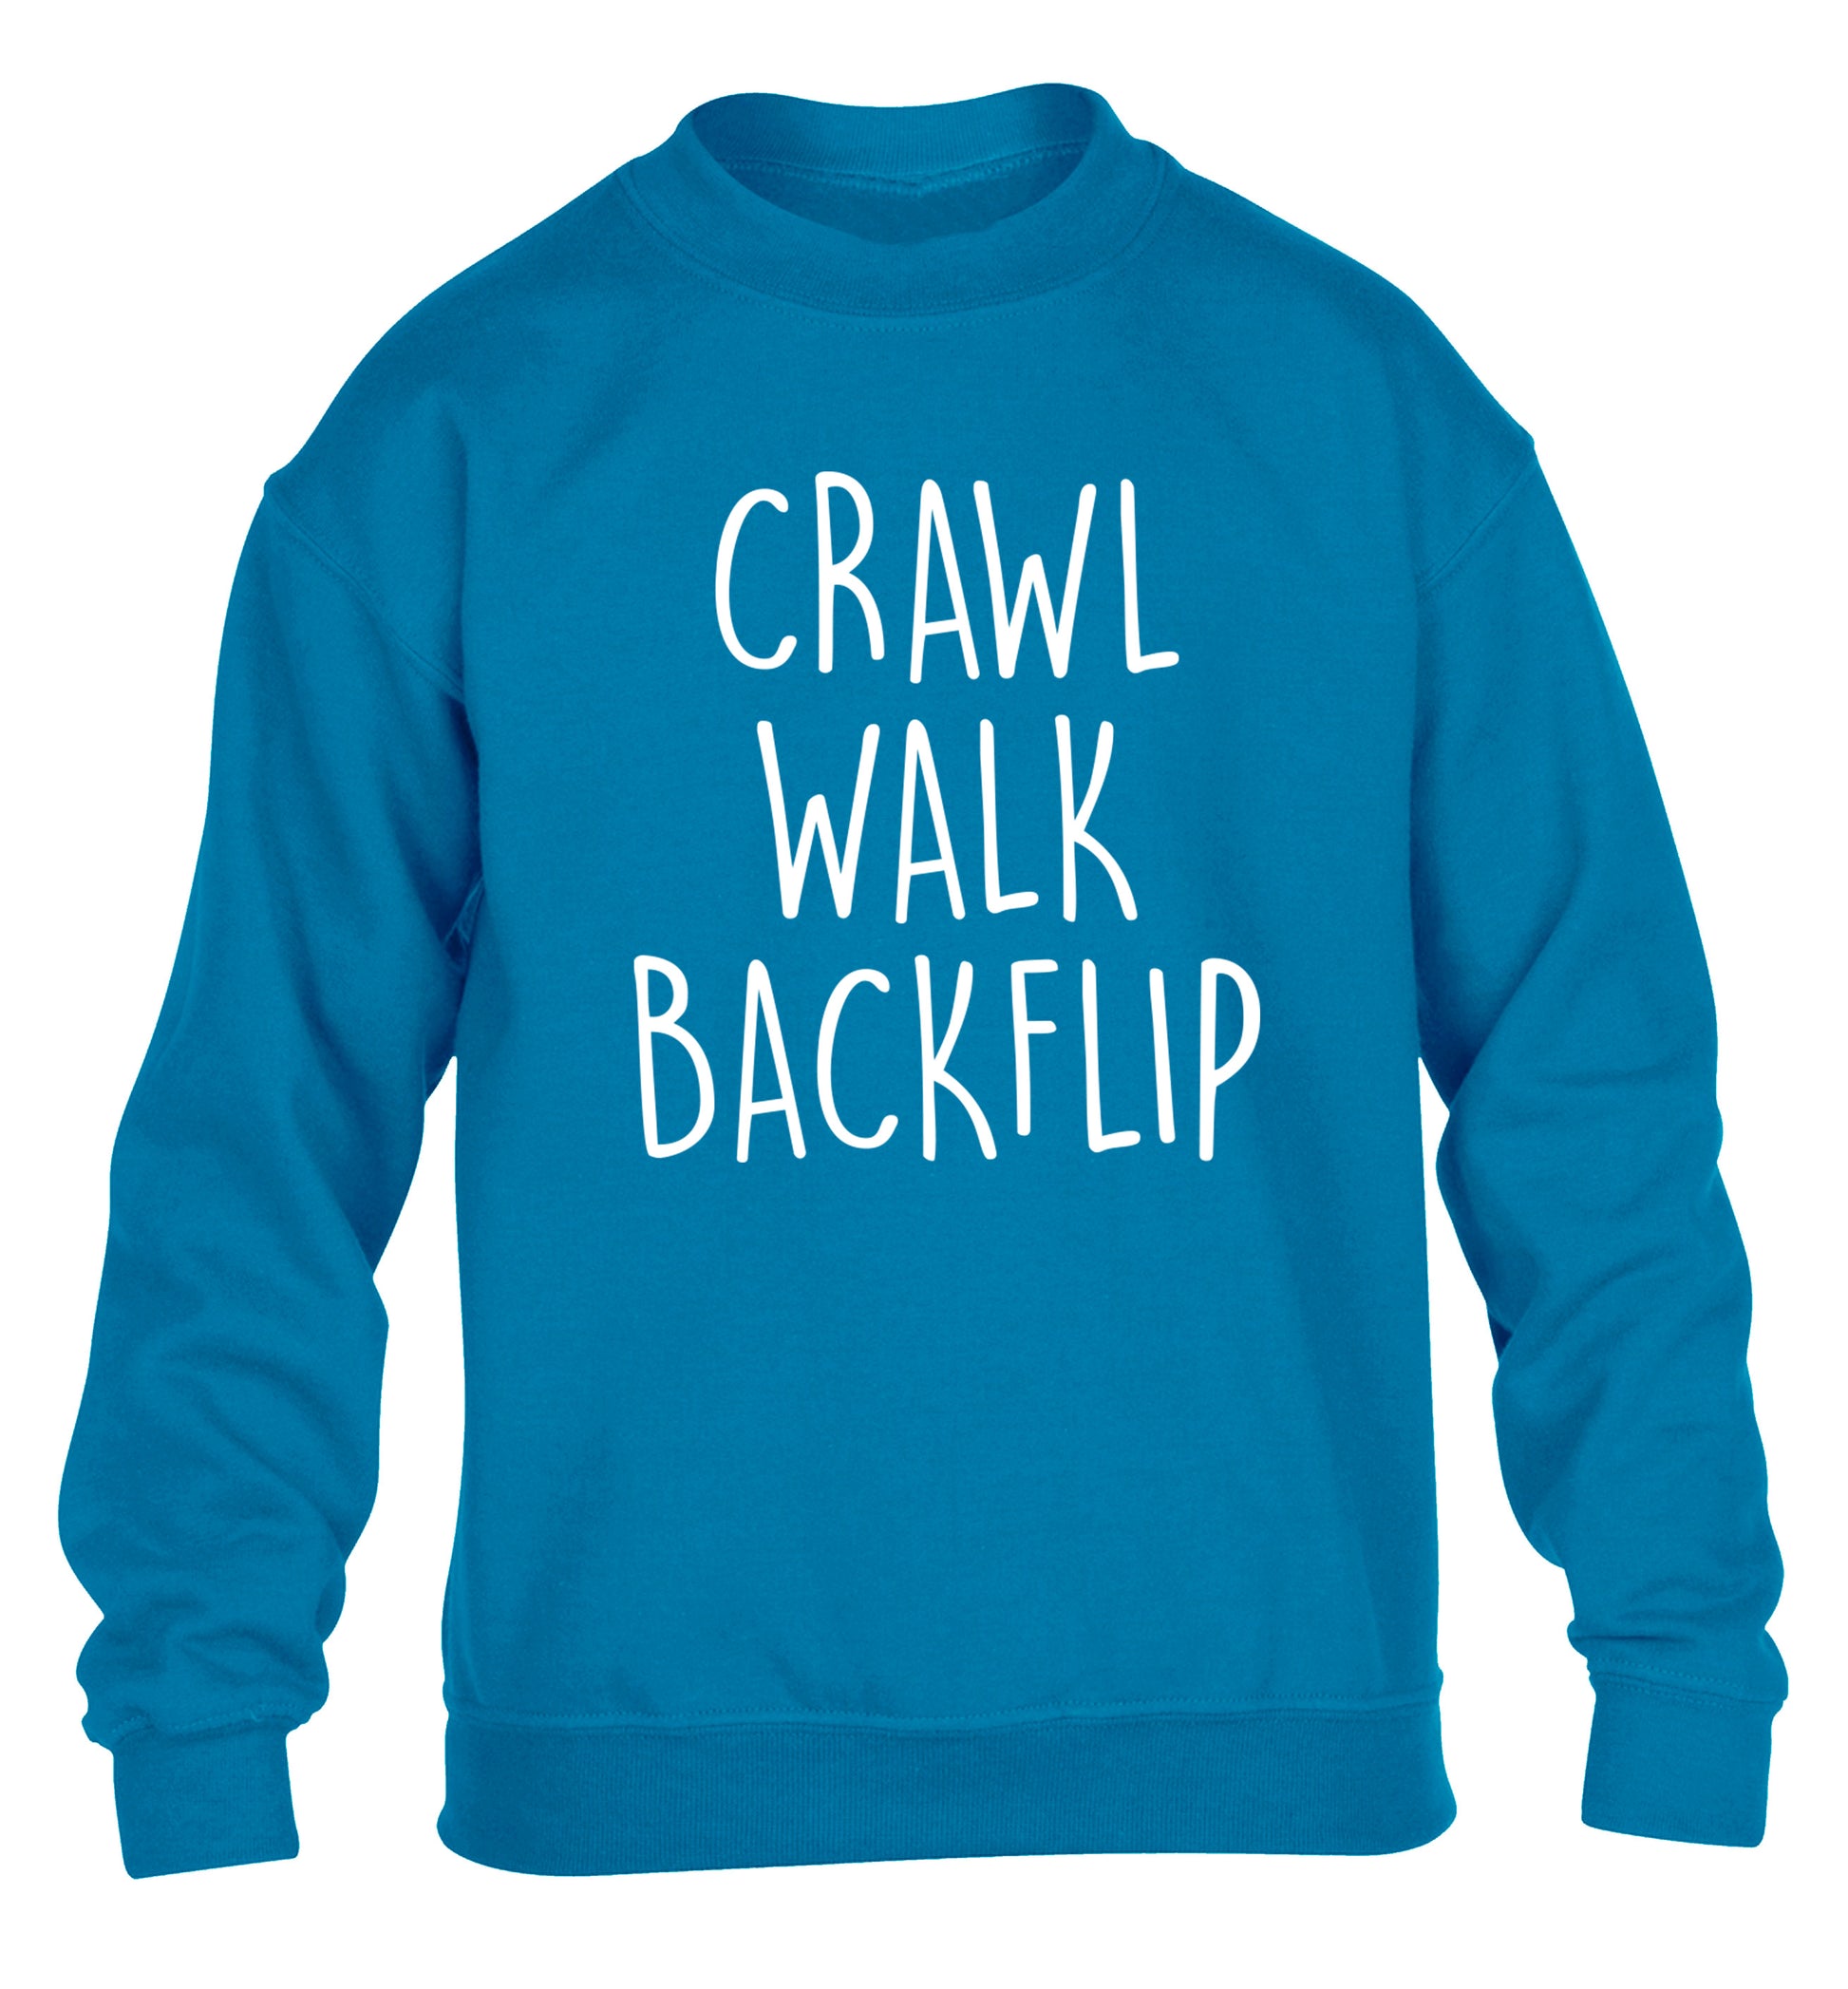 Crawl Walk Backflip children's blue sweater 12-13 Years